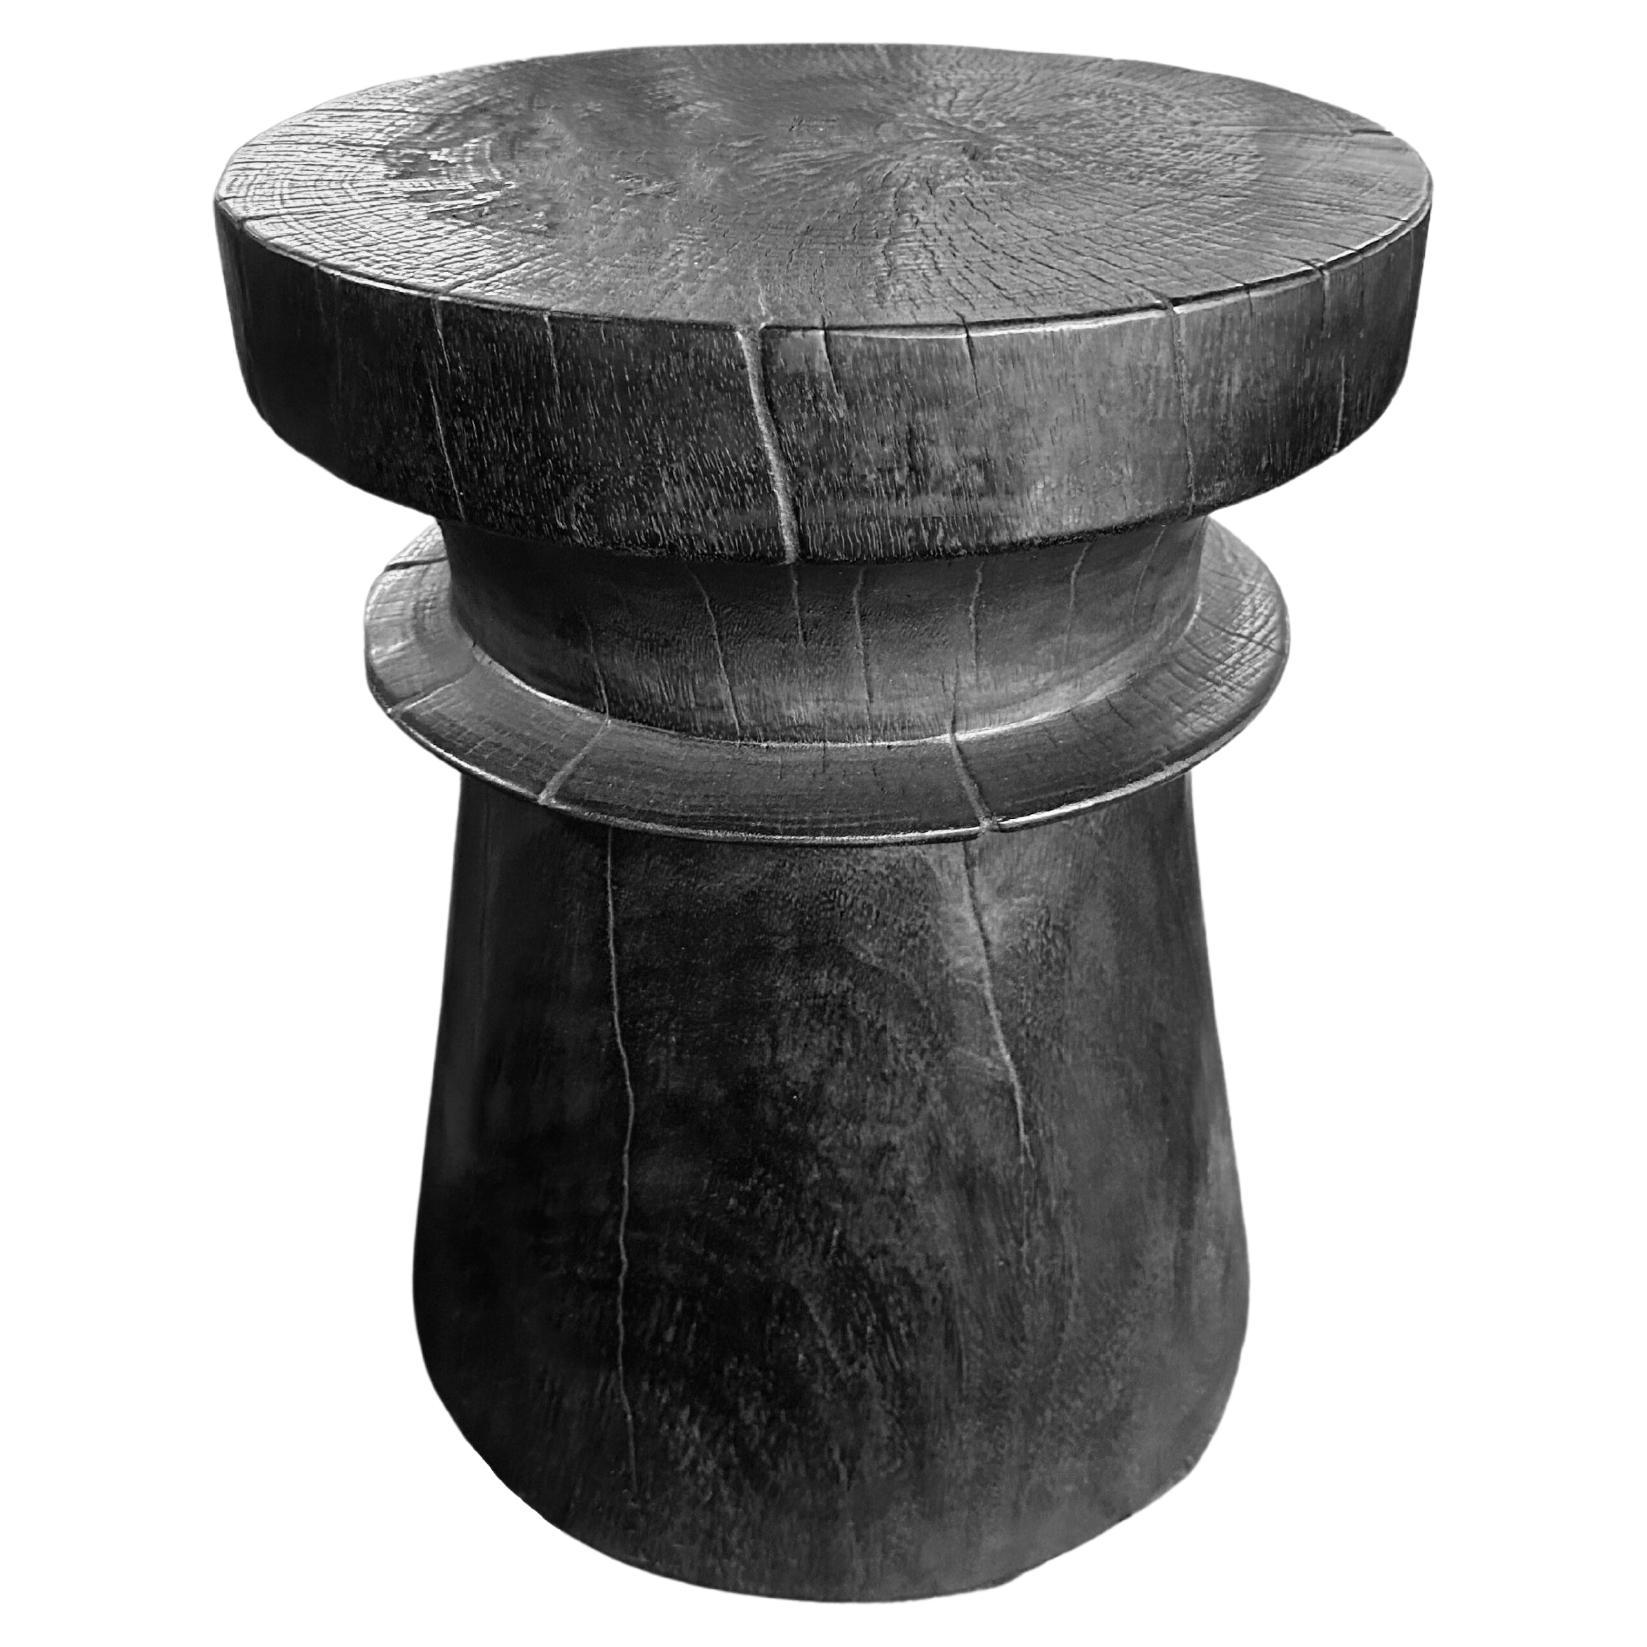 Table d'appoint en bois de Mango massif avec finition organique brûlée, moderne